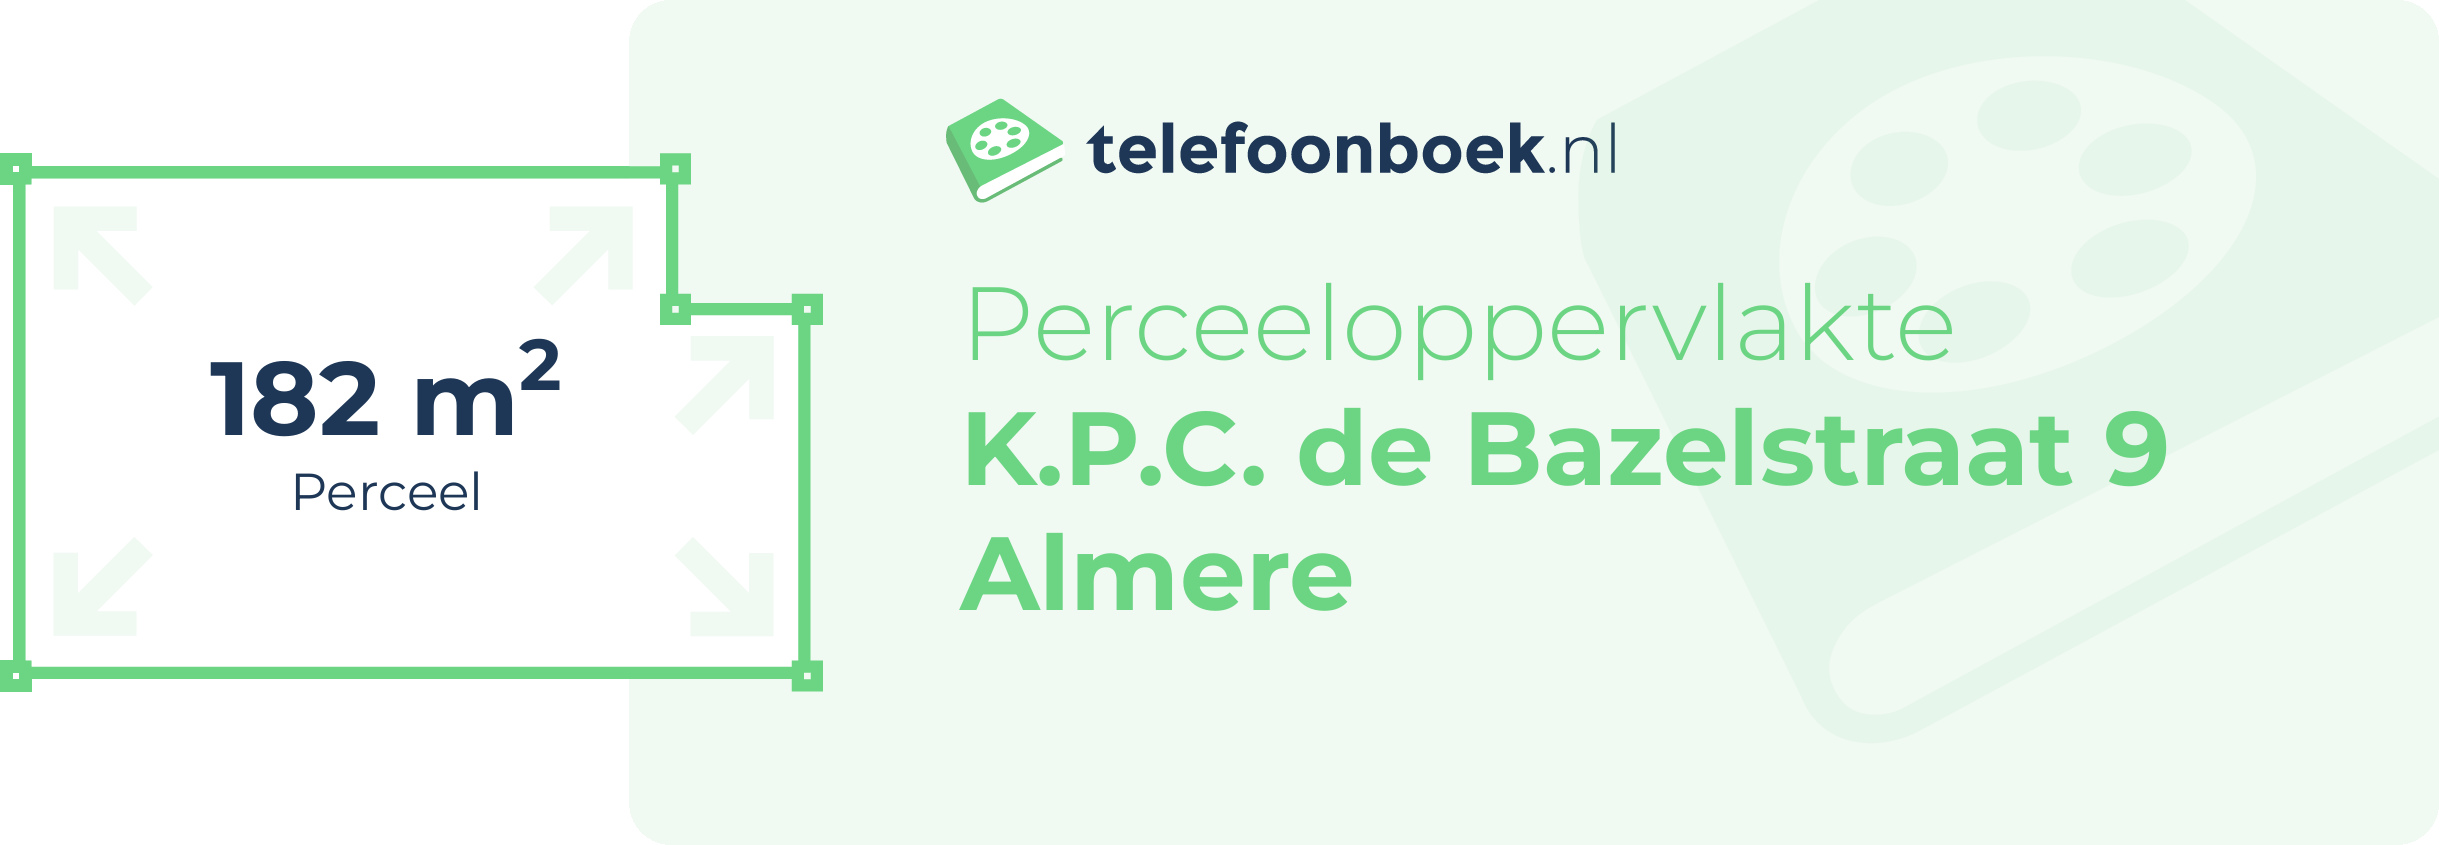 Perceeloppervlakte K.P.C. De Bazelstraat 9 Almere